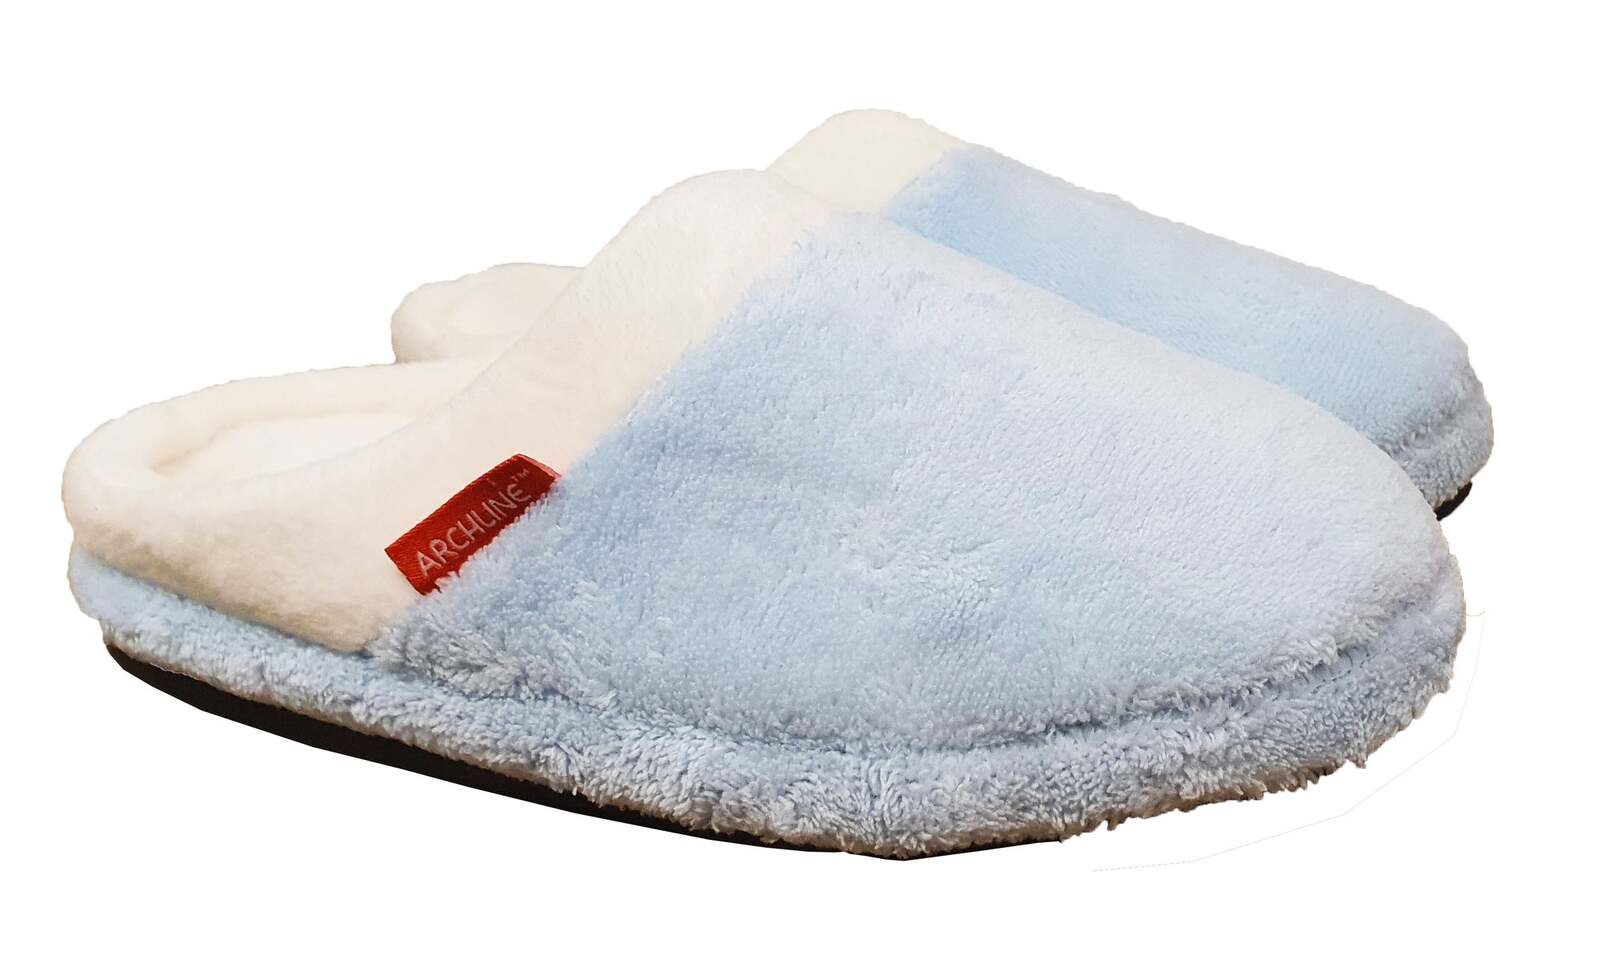 Elite Comfort Pedic Memory Foam Slippers - Small ( M 6-7 W 6.5-8.5), 1 -  Ralphs